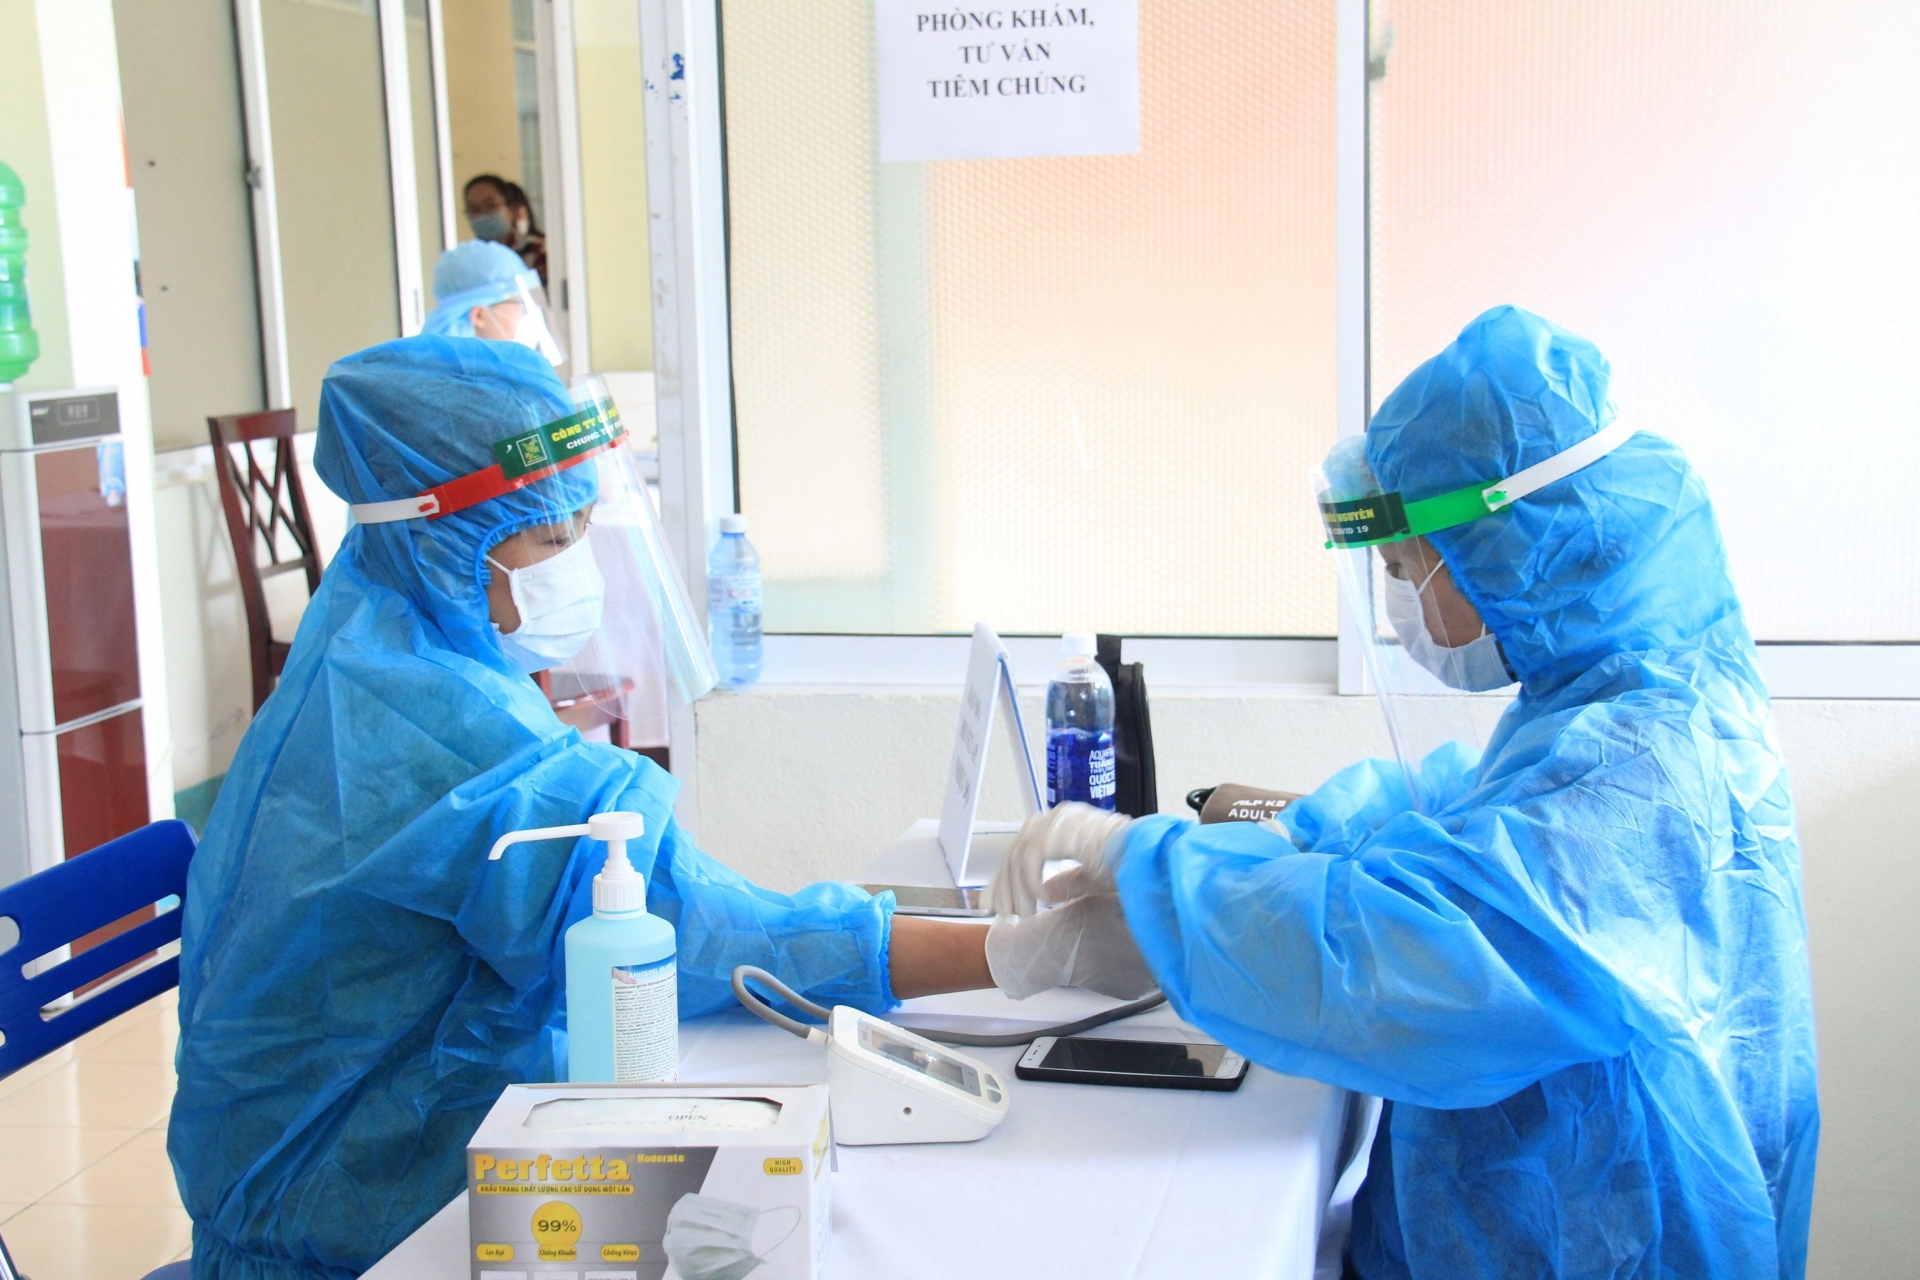 100 liều vắc xin đầu tiên ở Đà Nẵng được tiêm cho các nhân viên y tế